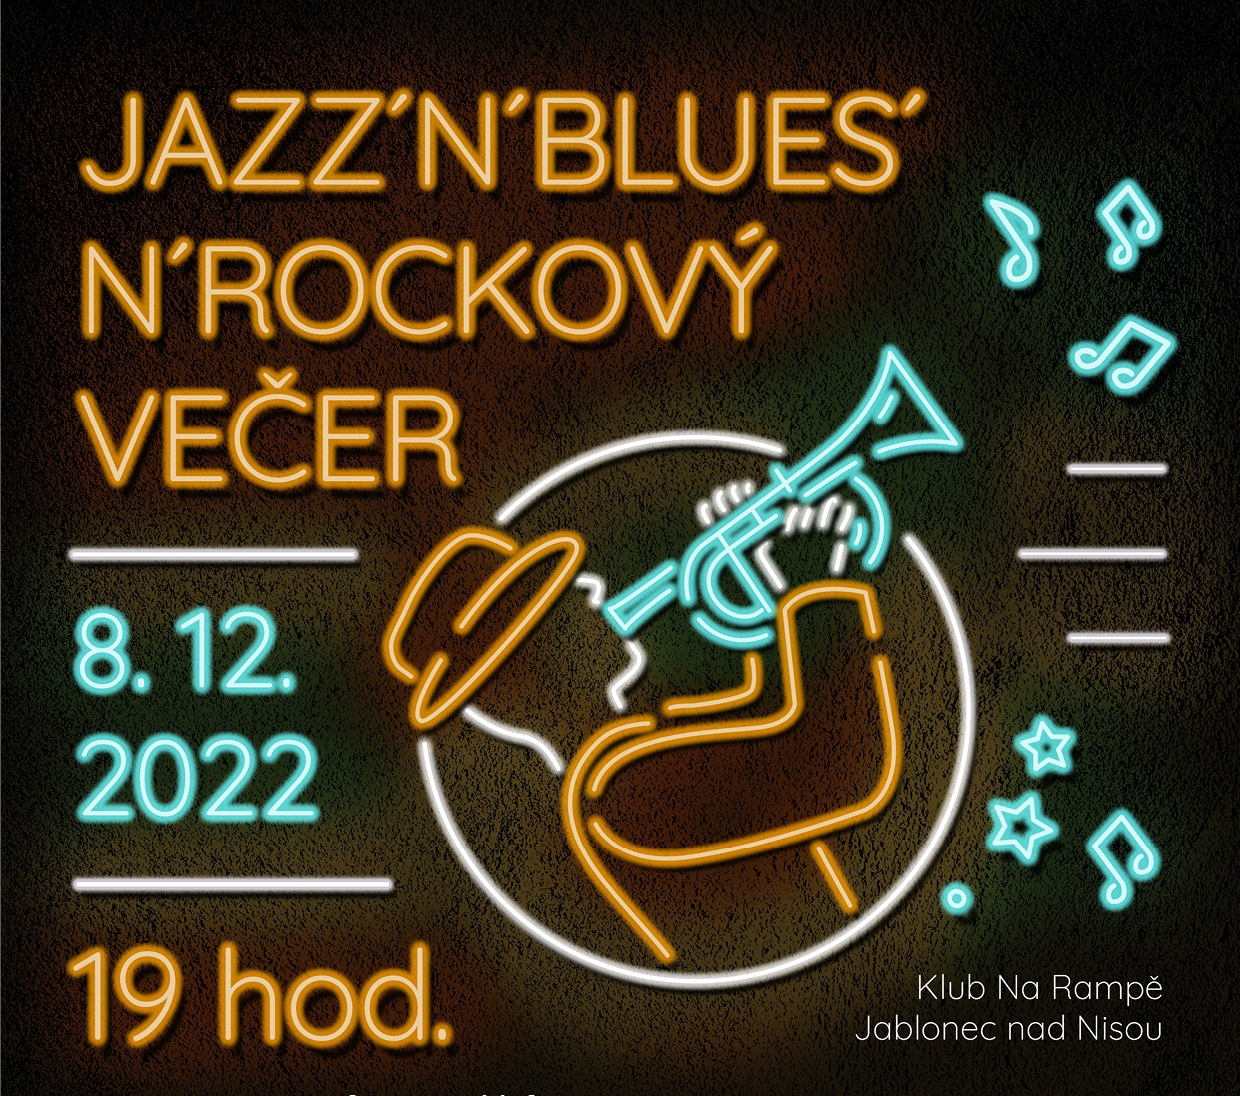 Jazz blues a rockový večer v Klubu Na Rampě